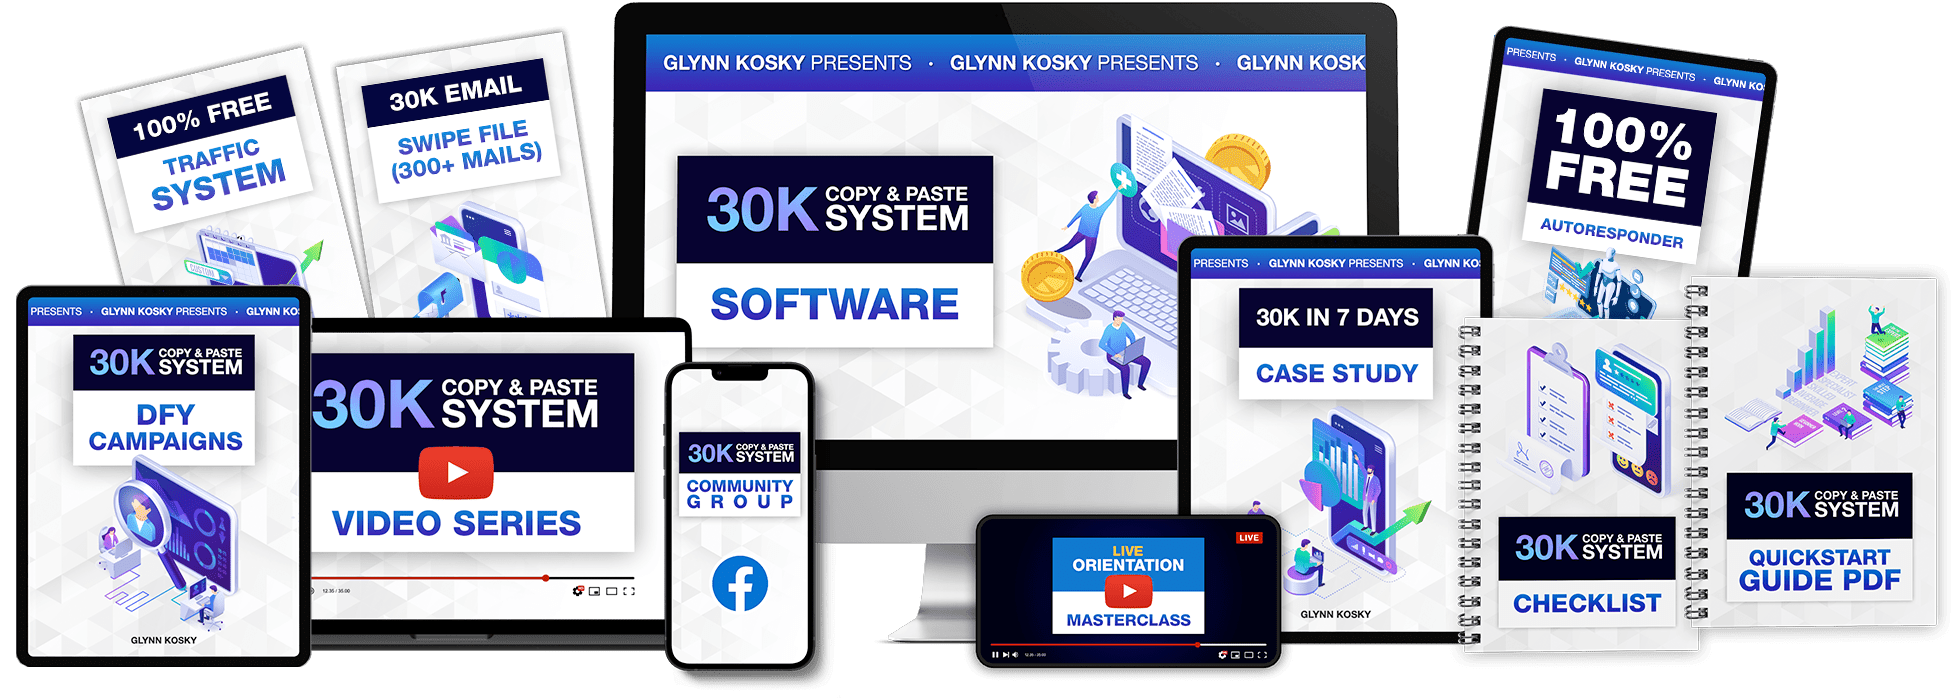 Glynn Kosky – 30K Copy & Paste System Free Download